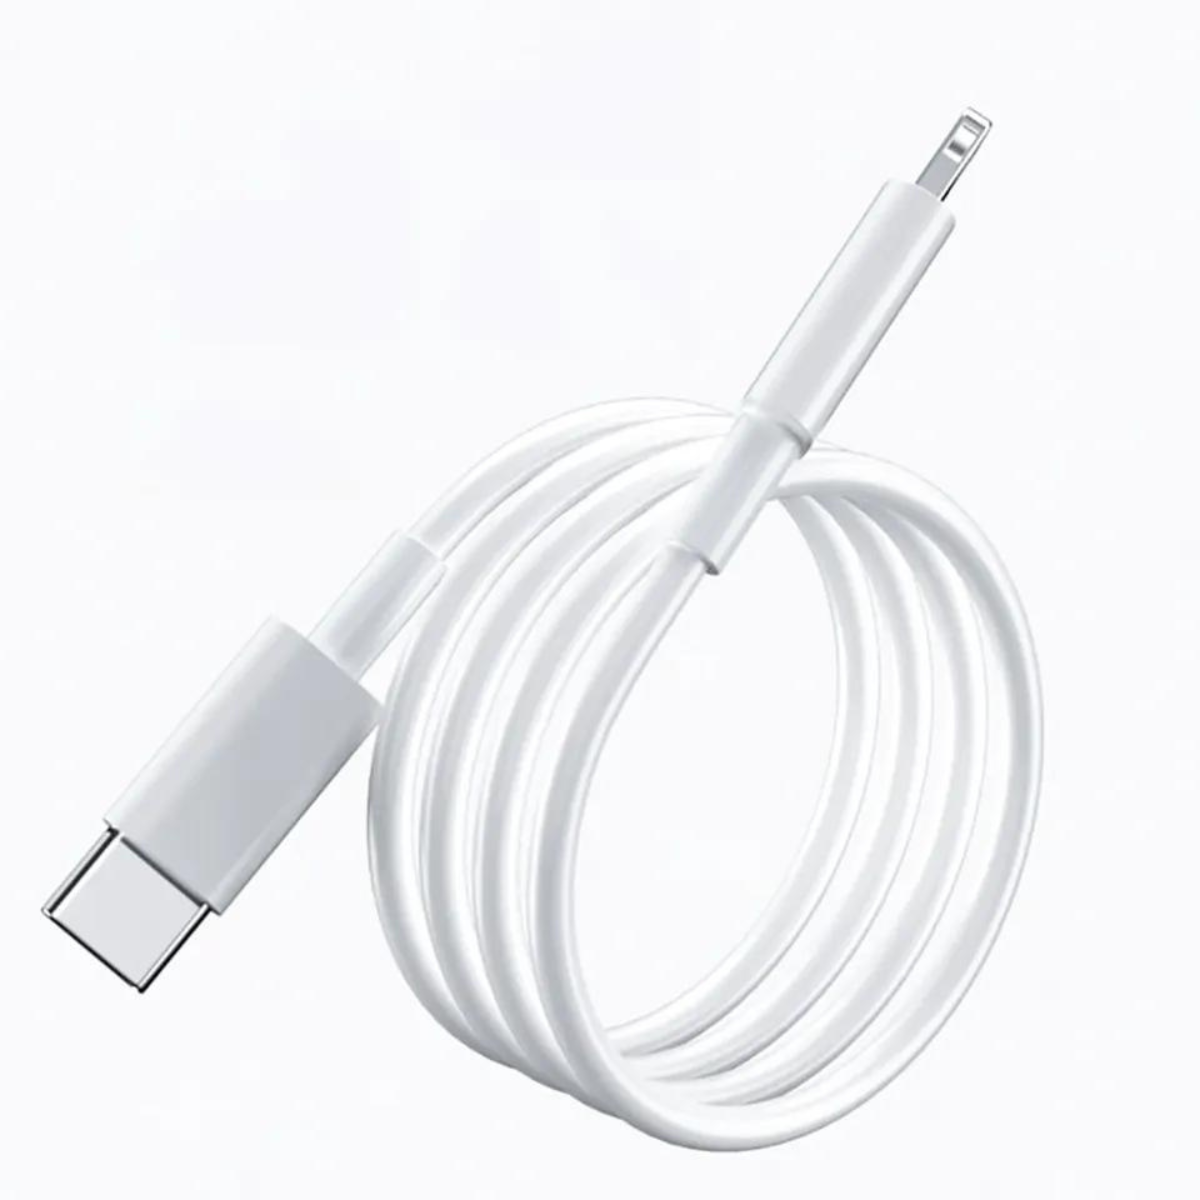 TRMK iPhone zu USB-C-Kabel, Schnellladekabel, Daten weiß, USB-C-Kabel, Ladekabel, 1m, weiß Kabel